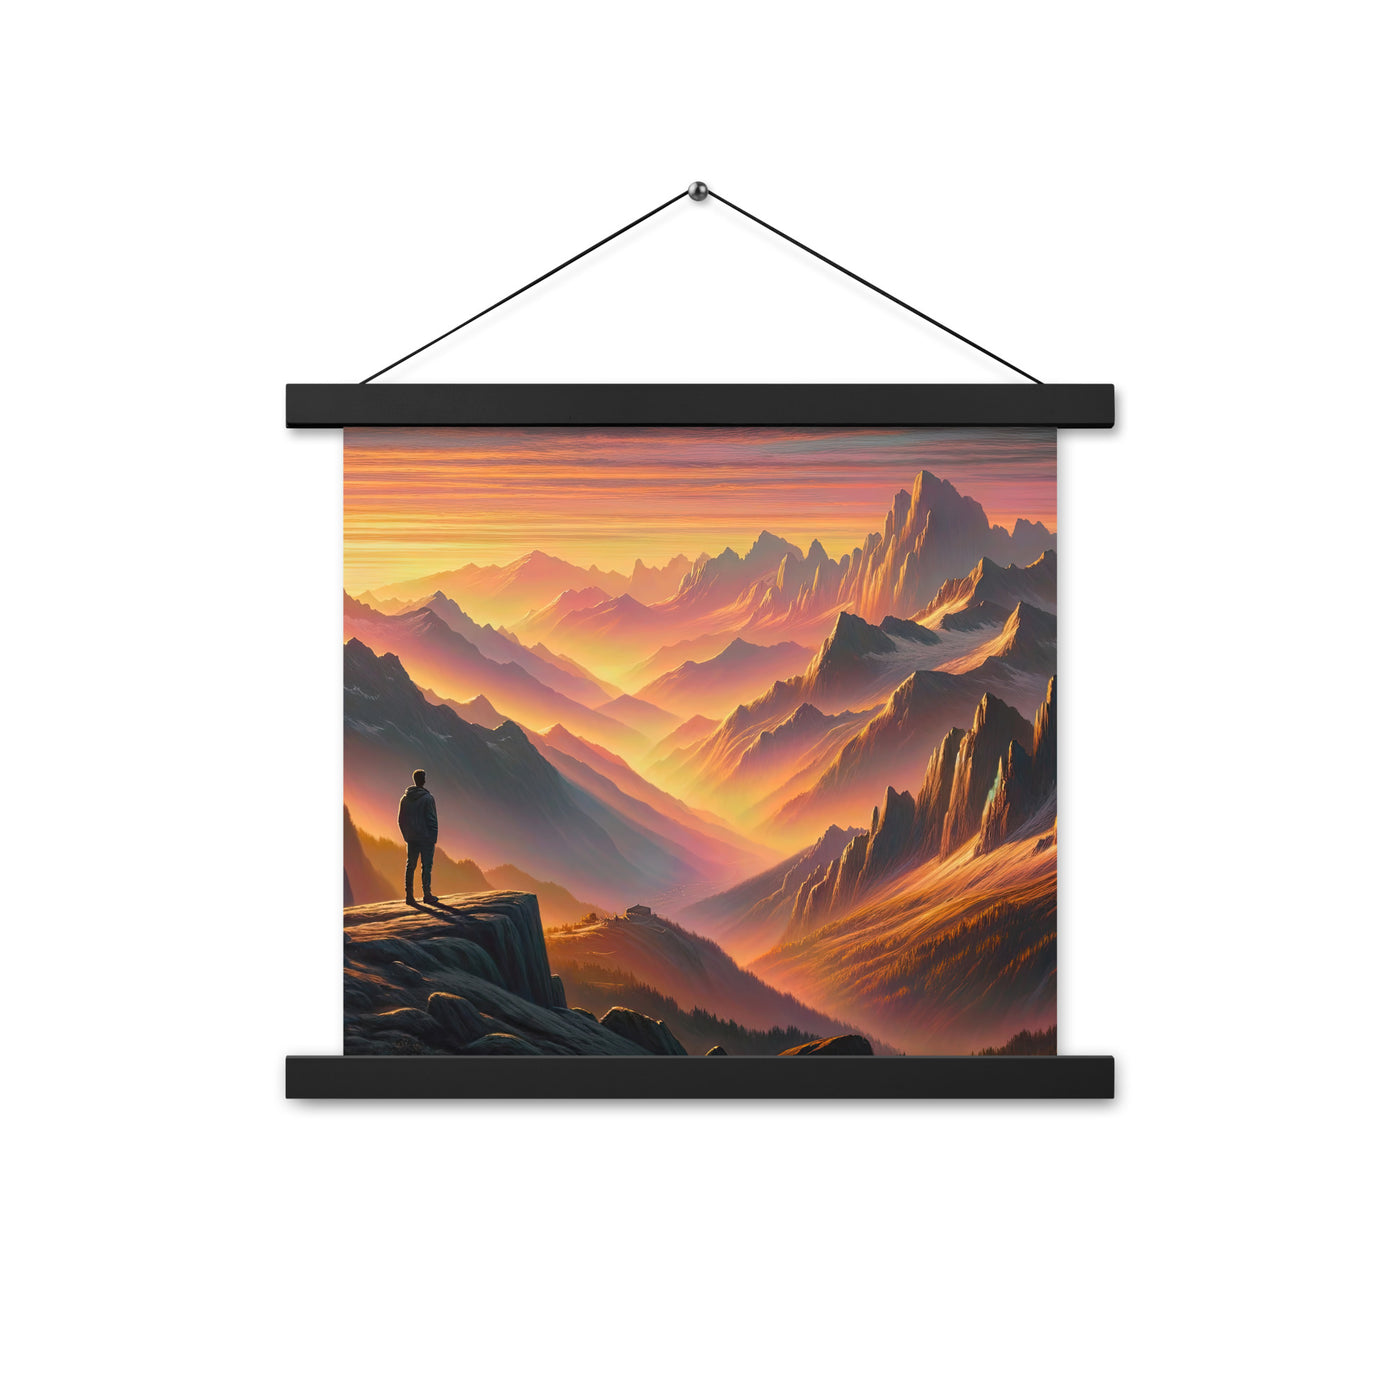 Ölgemälde der Alpen in der goldenen Stunde mit Wanderer, Orange-Rosa Bergpanorama - Premium Poster mit Aufhängung wandern xxx yyy zzz 35.6 x 35.6 cm